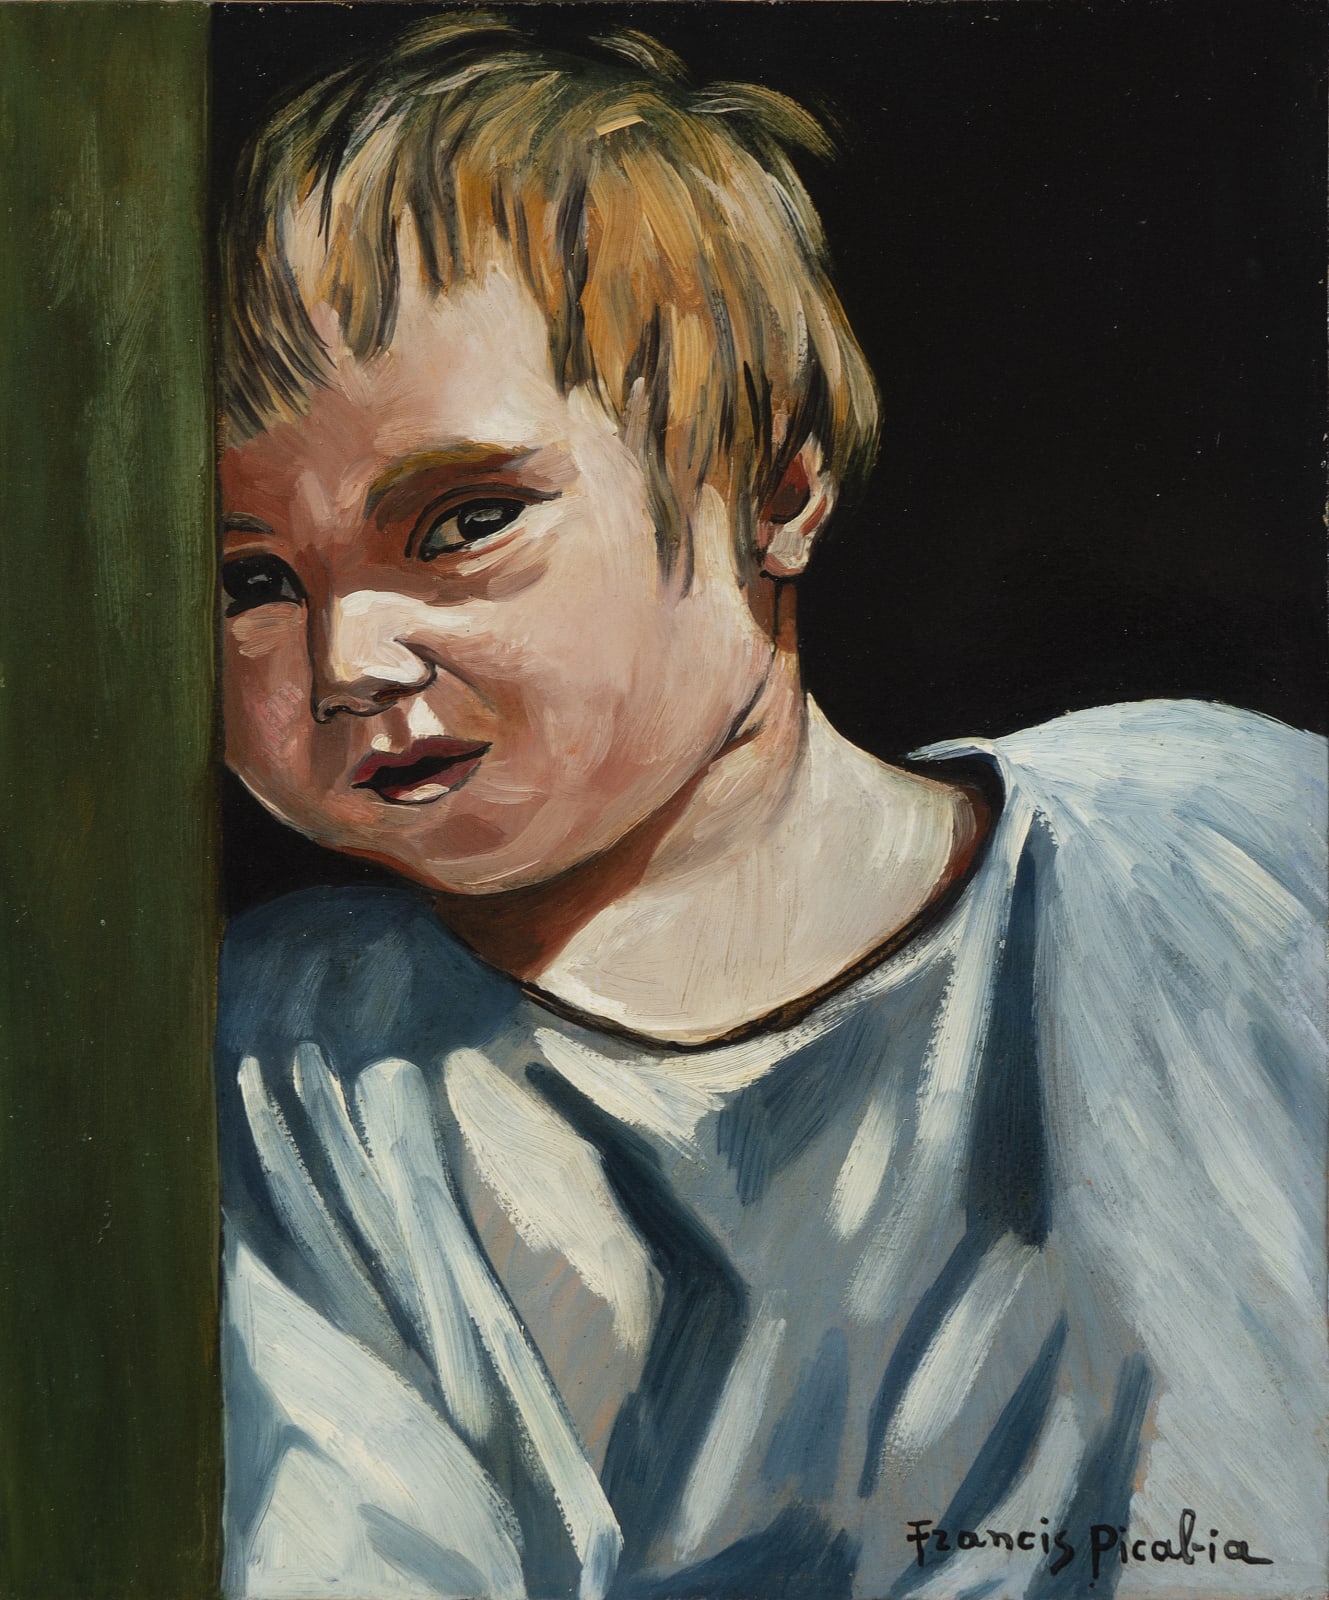 FRANCIS PICABIA, Portrait d'un enfant, circa 1941-1943